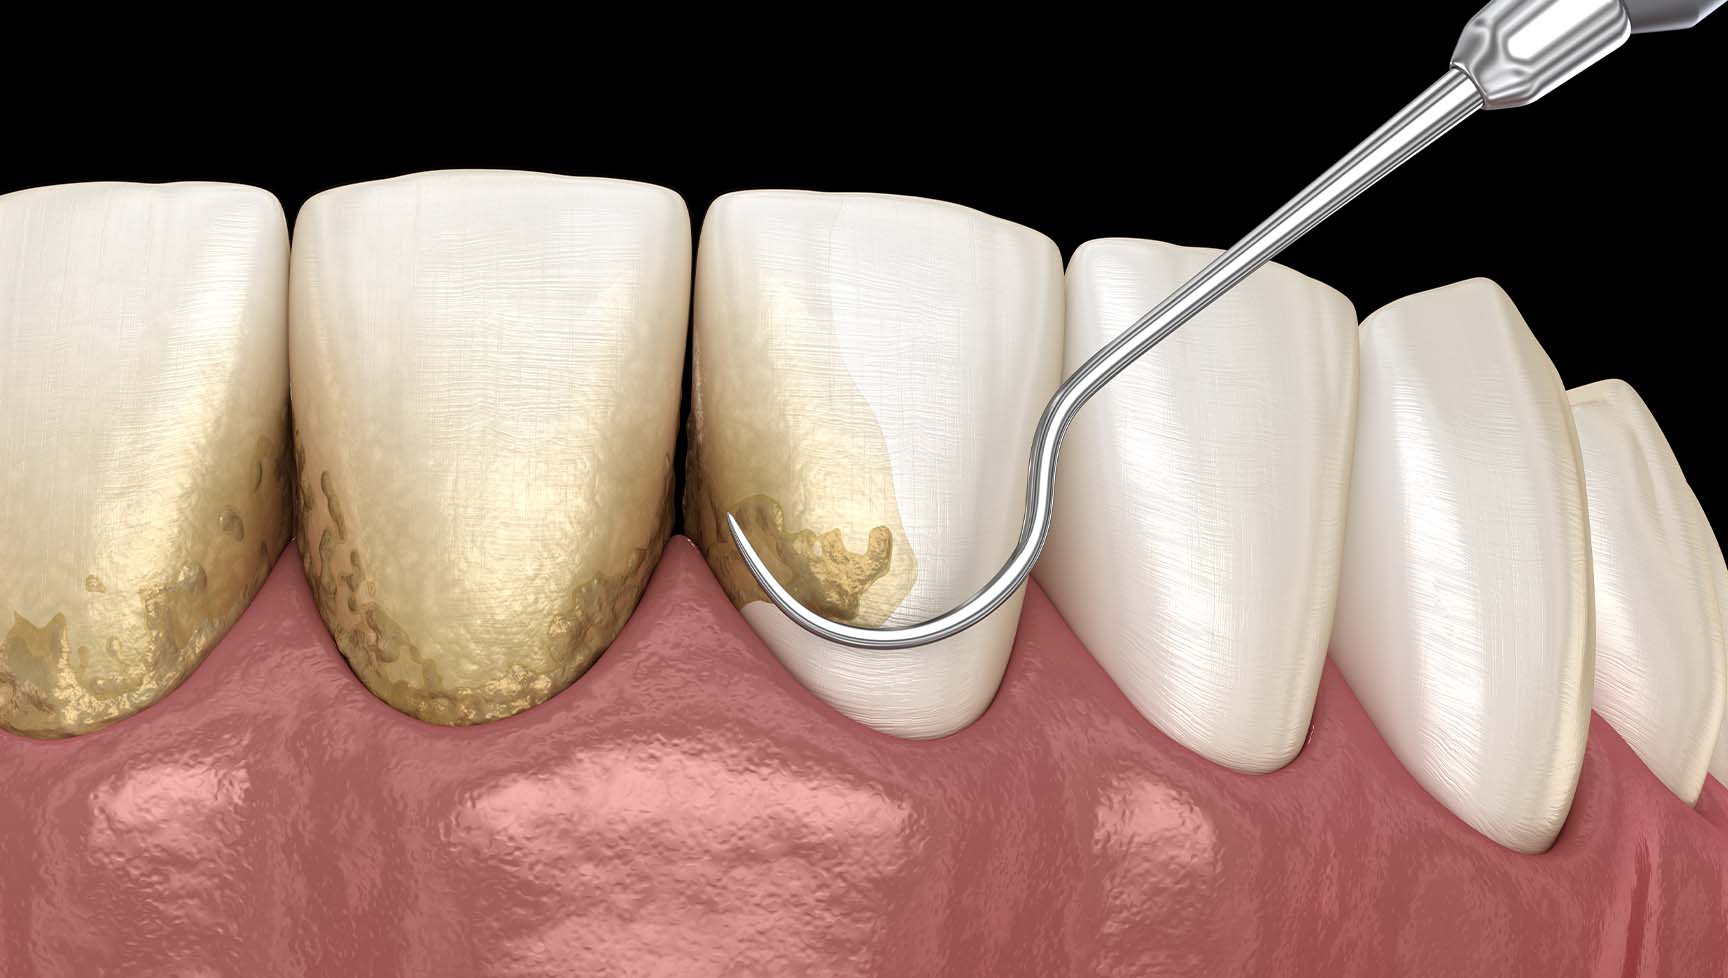 歯と歯肉の間に溜まっていた歯石や歯垢(プラーク)除去